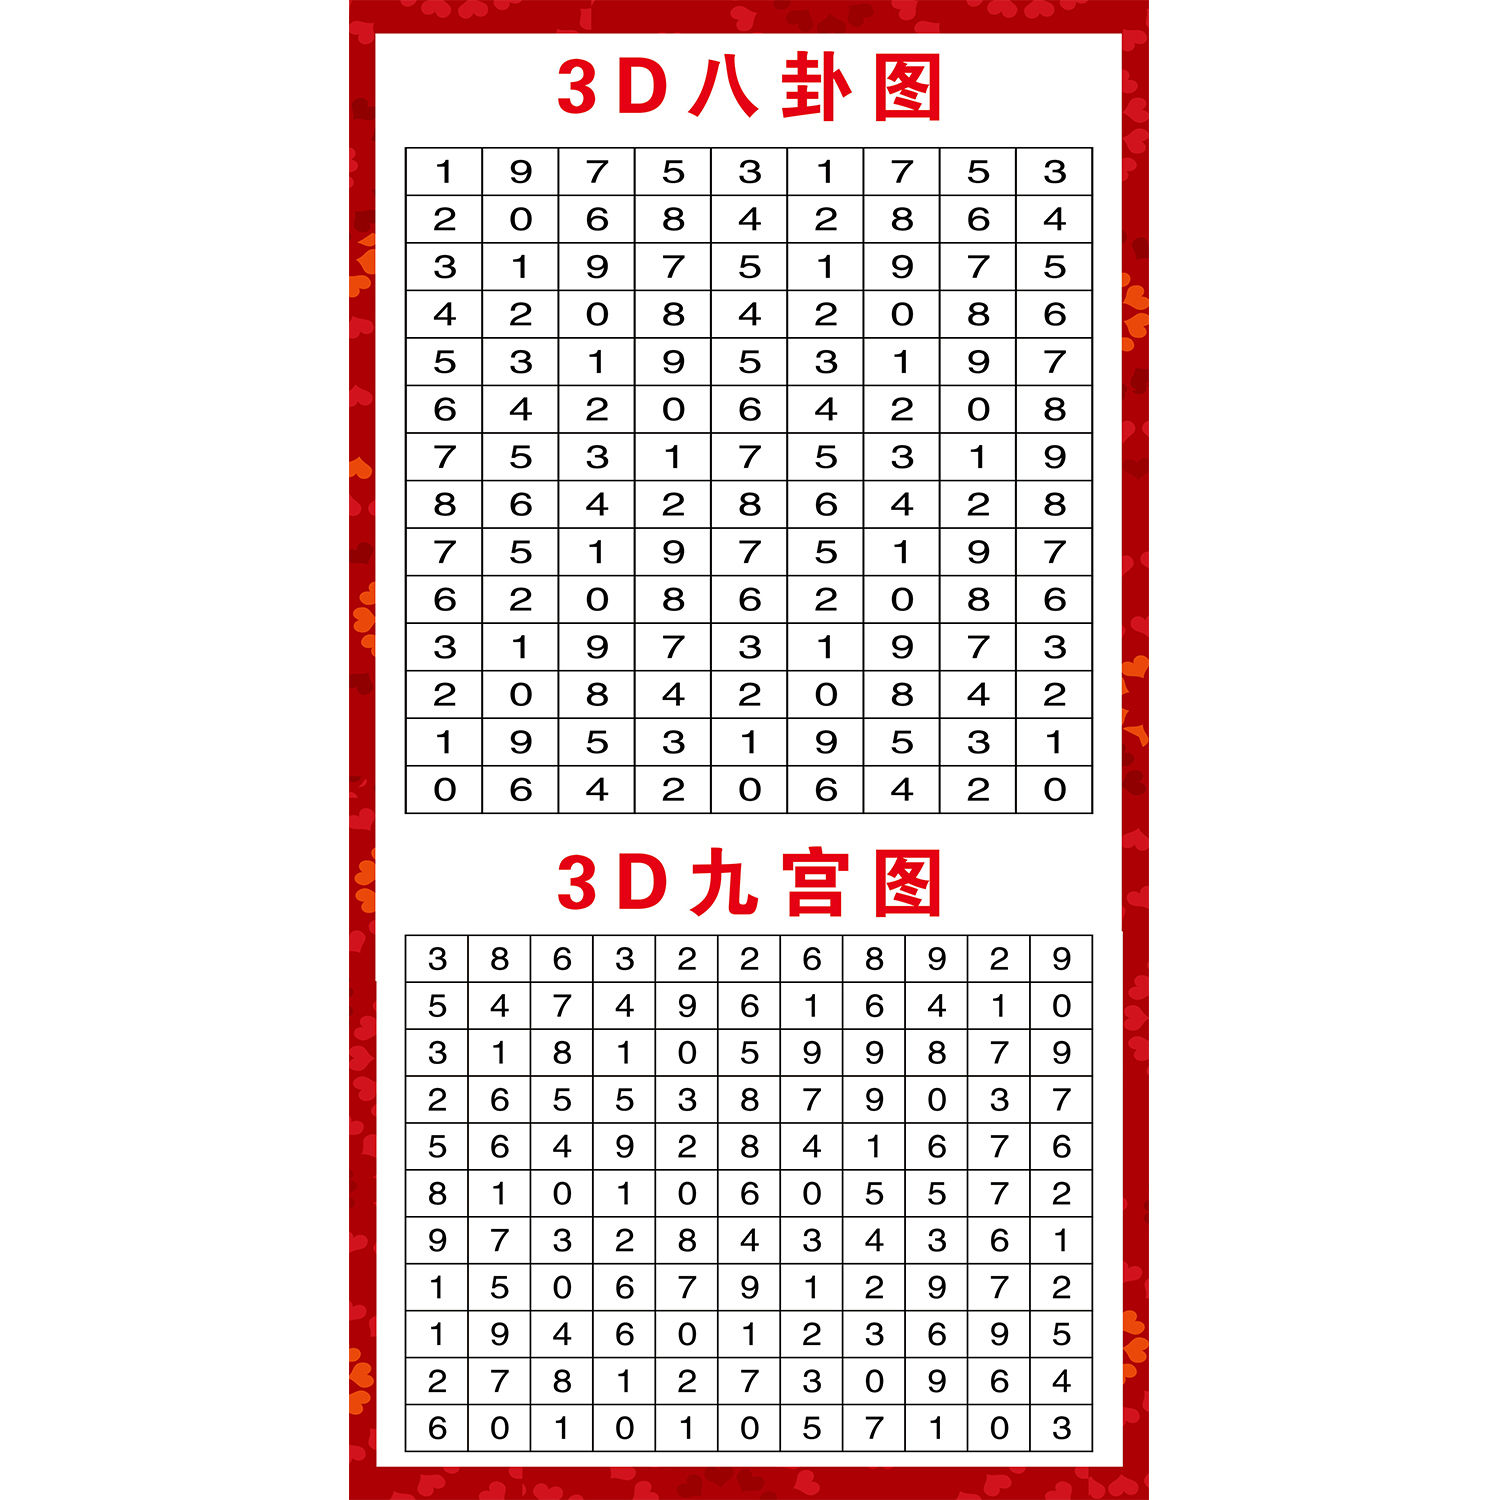 3D九宫八卦图试机号参考图福彩和值跨度对照表数值号码分区墙贴纸